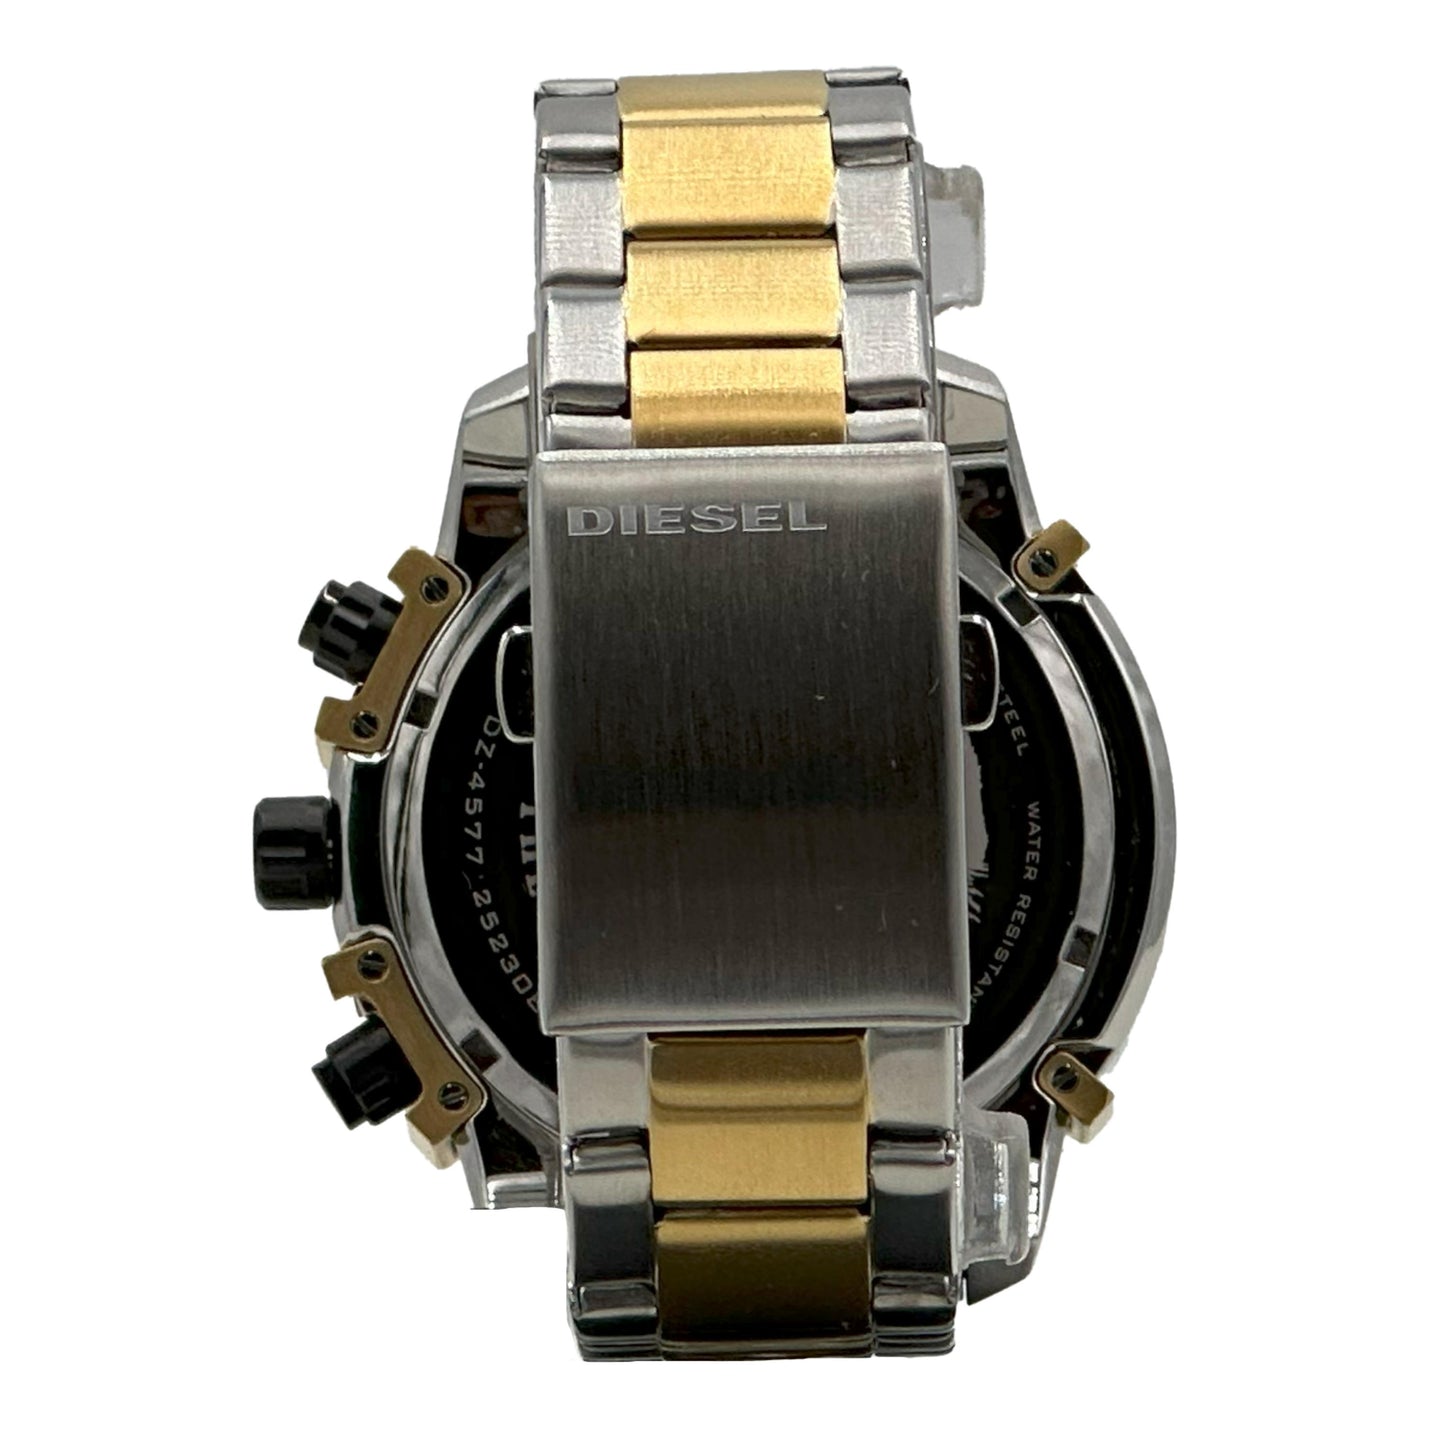 Diesel Men's Griffed Stainless Steel Chronograph Quartz Watch - DZ4577